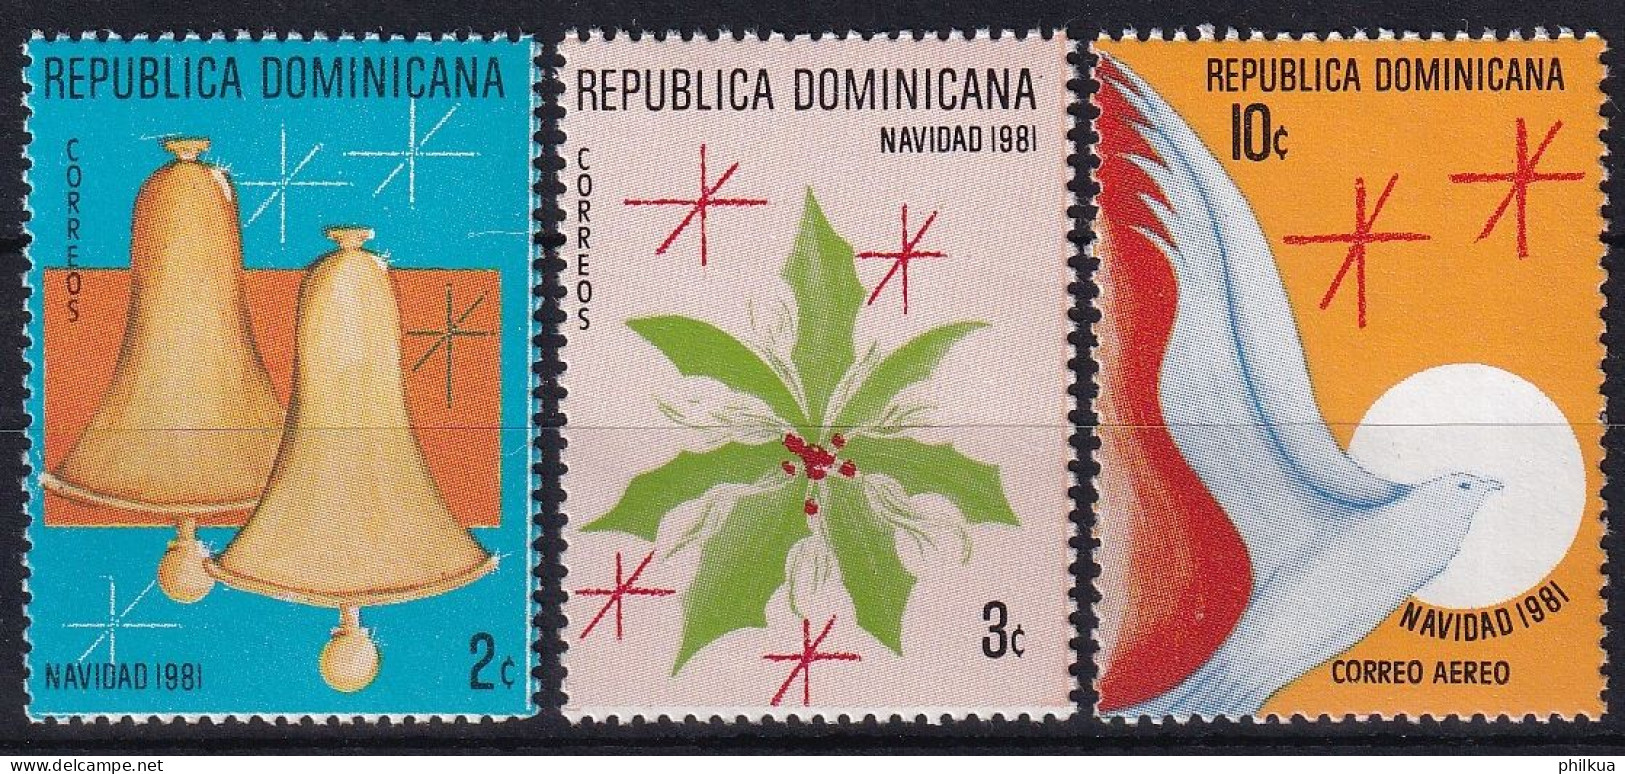 MiNr. 1327 - 1329 Dominikanische Republik 1981, 23. Dez. Weihnachten - Postfrisch/**/MNH - Dominican Republic